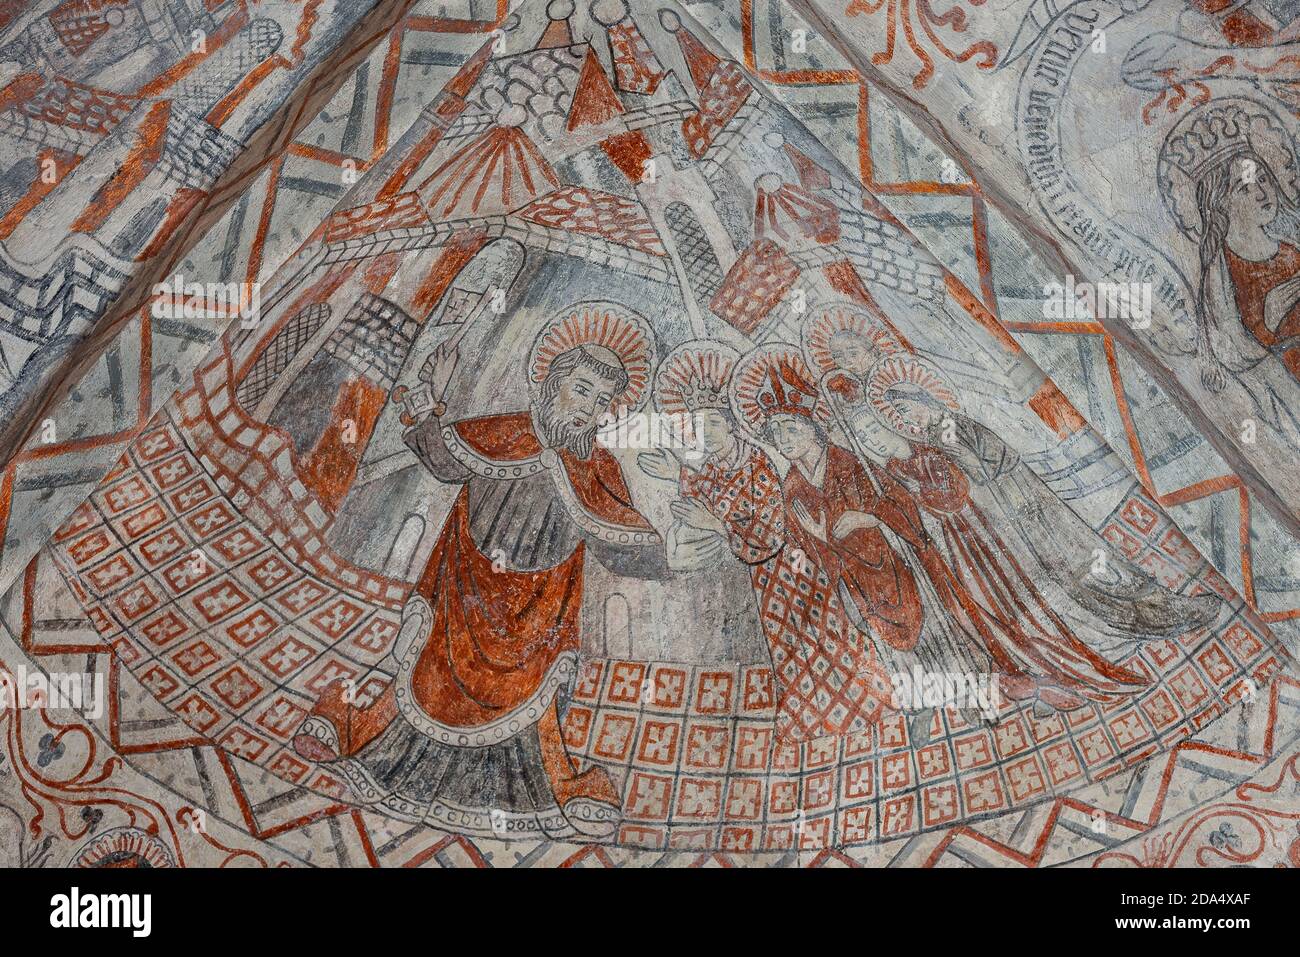 Petrus hat den Schlüssel des Reiches und öffnet den Pilgern das Tor zum Himmel. Ein altes gotisches Fresko in der Tuse-Kirche, Dänemark, 5. November 2020 Stockfoto